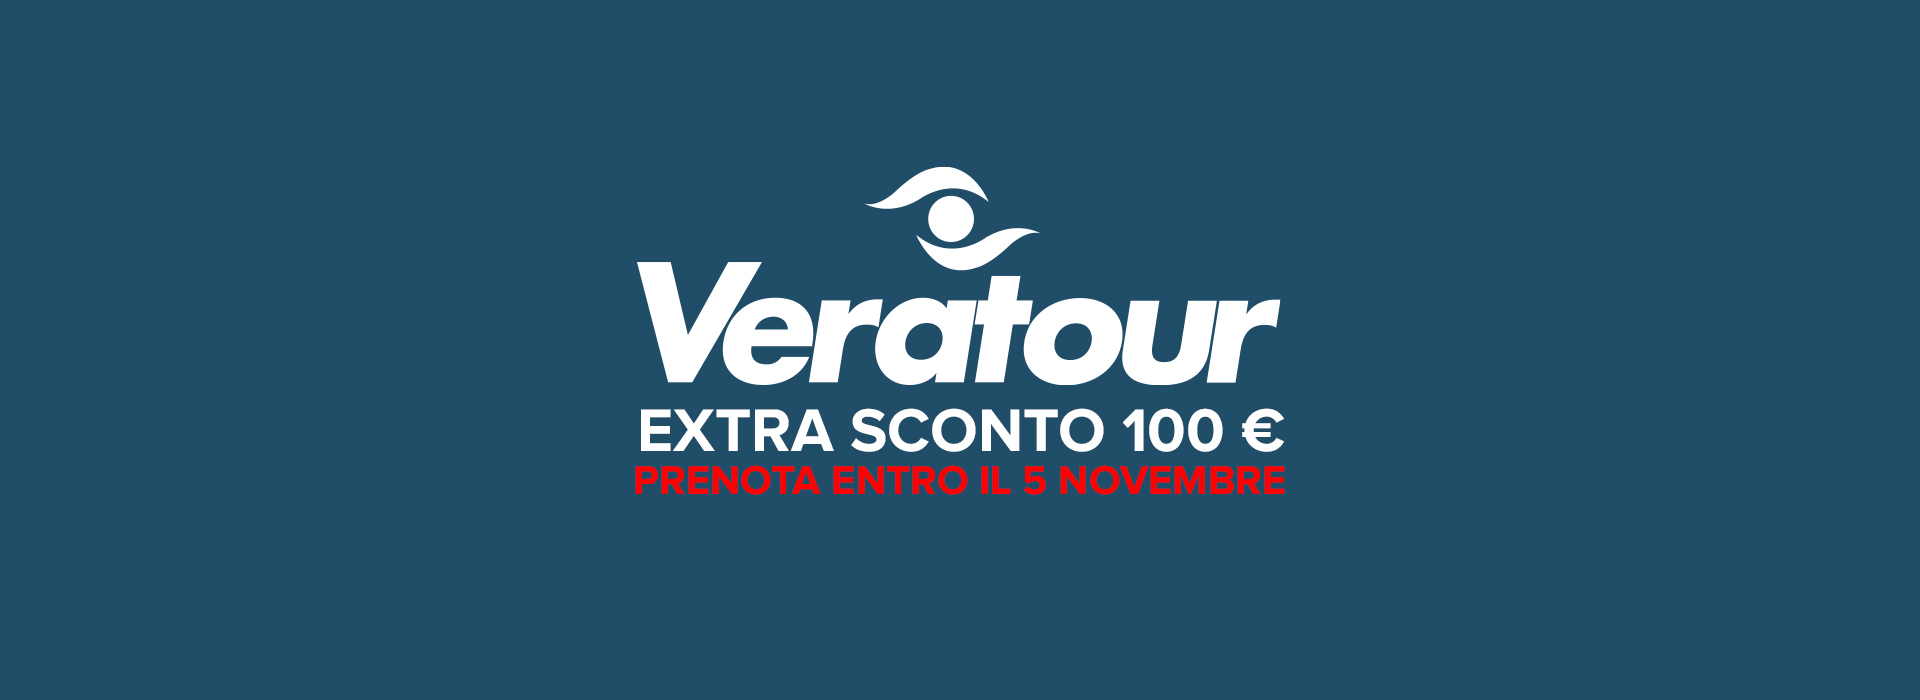 Promozione Veratour: Extra sconto 100 €